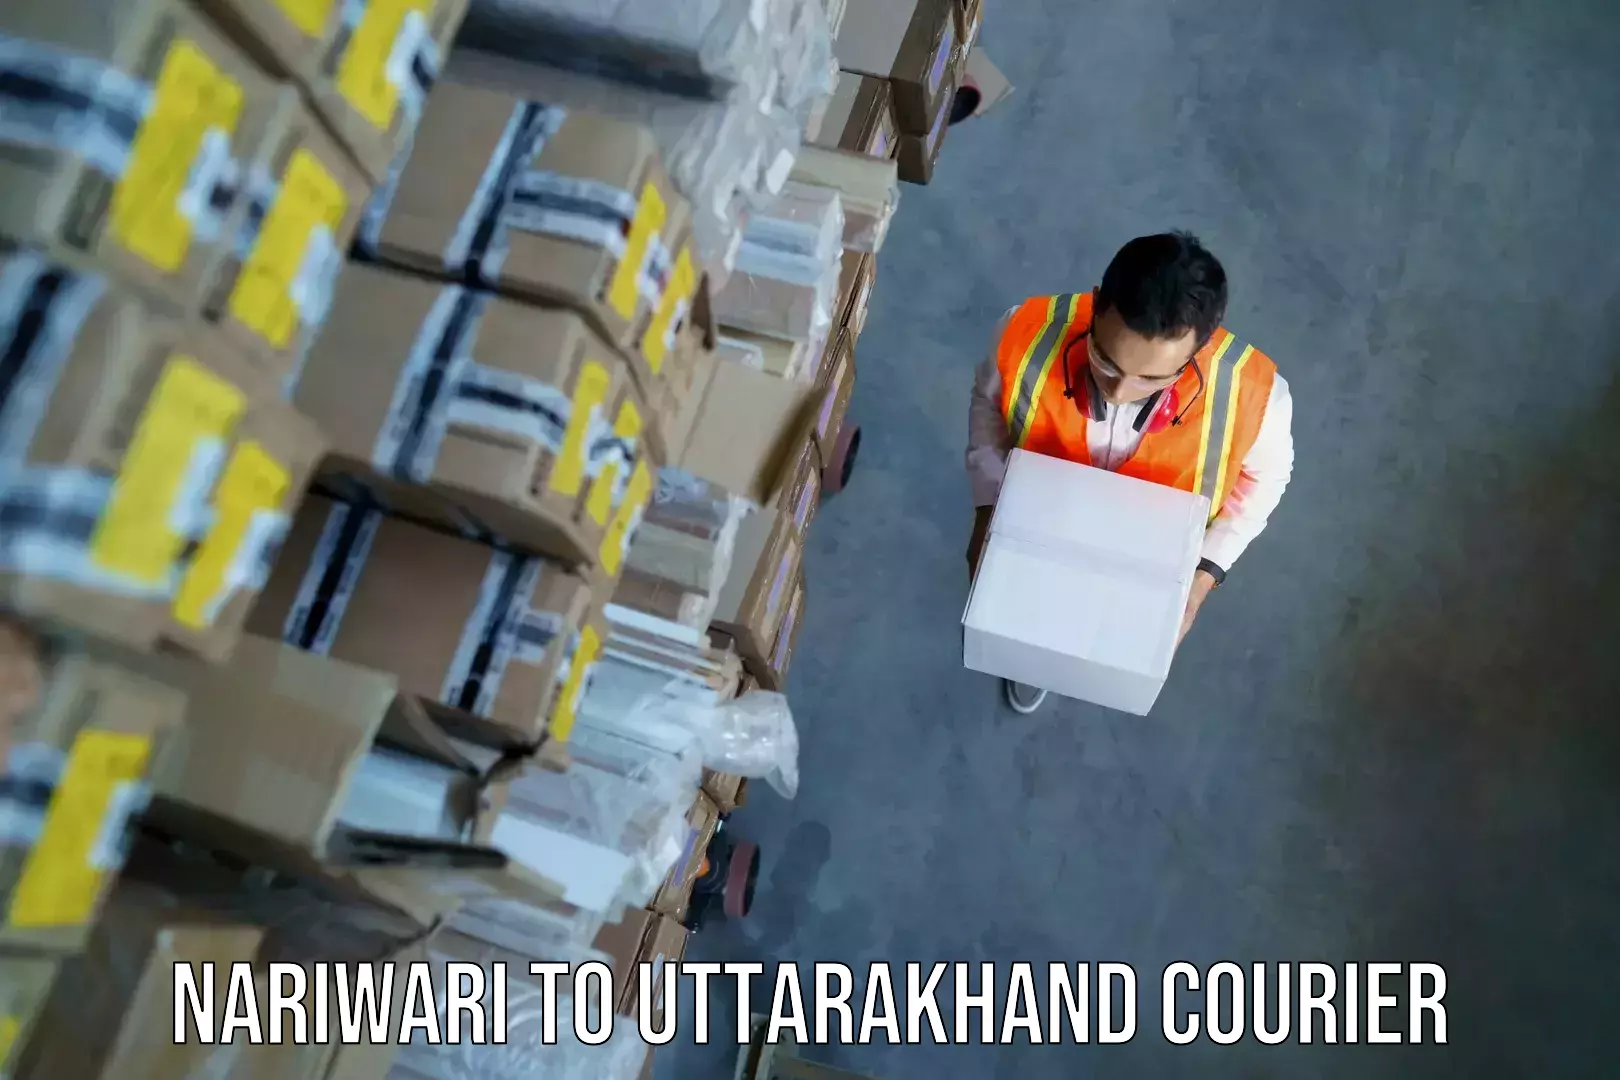 Baggage shipping service Nariwari to Dwarahat